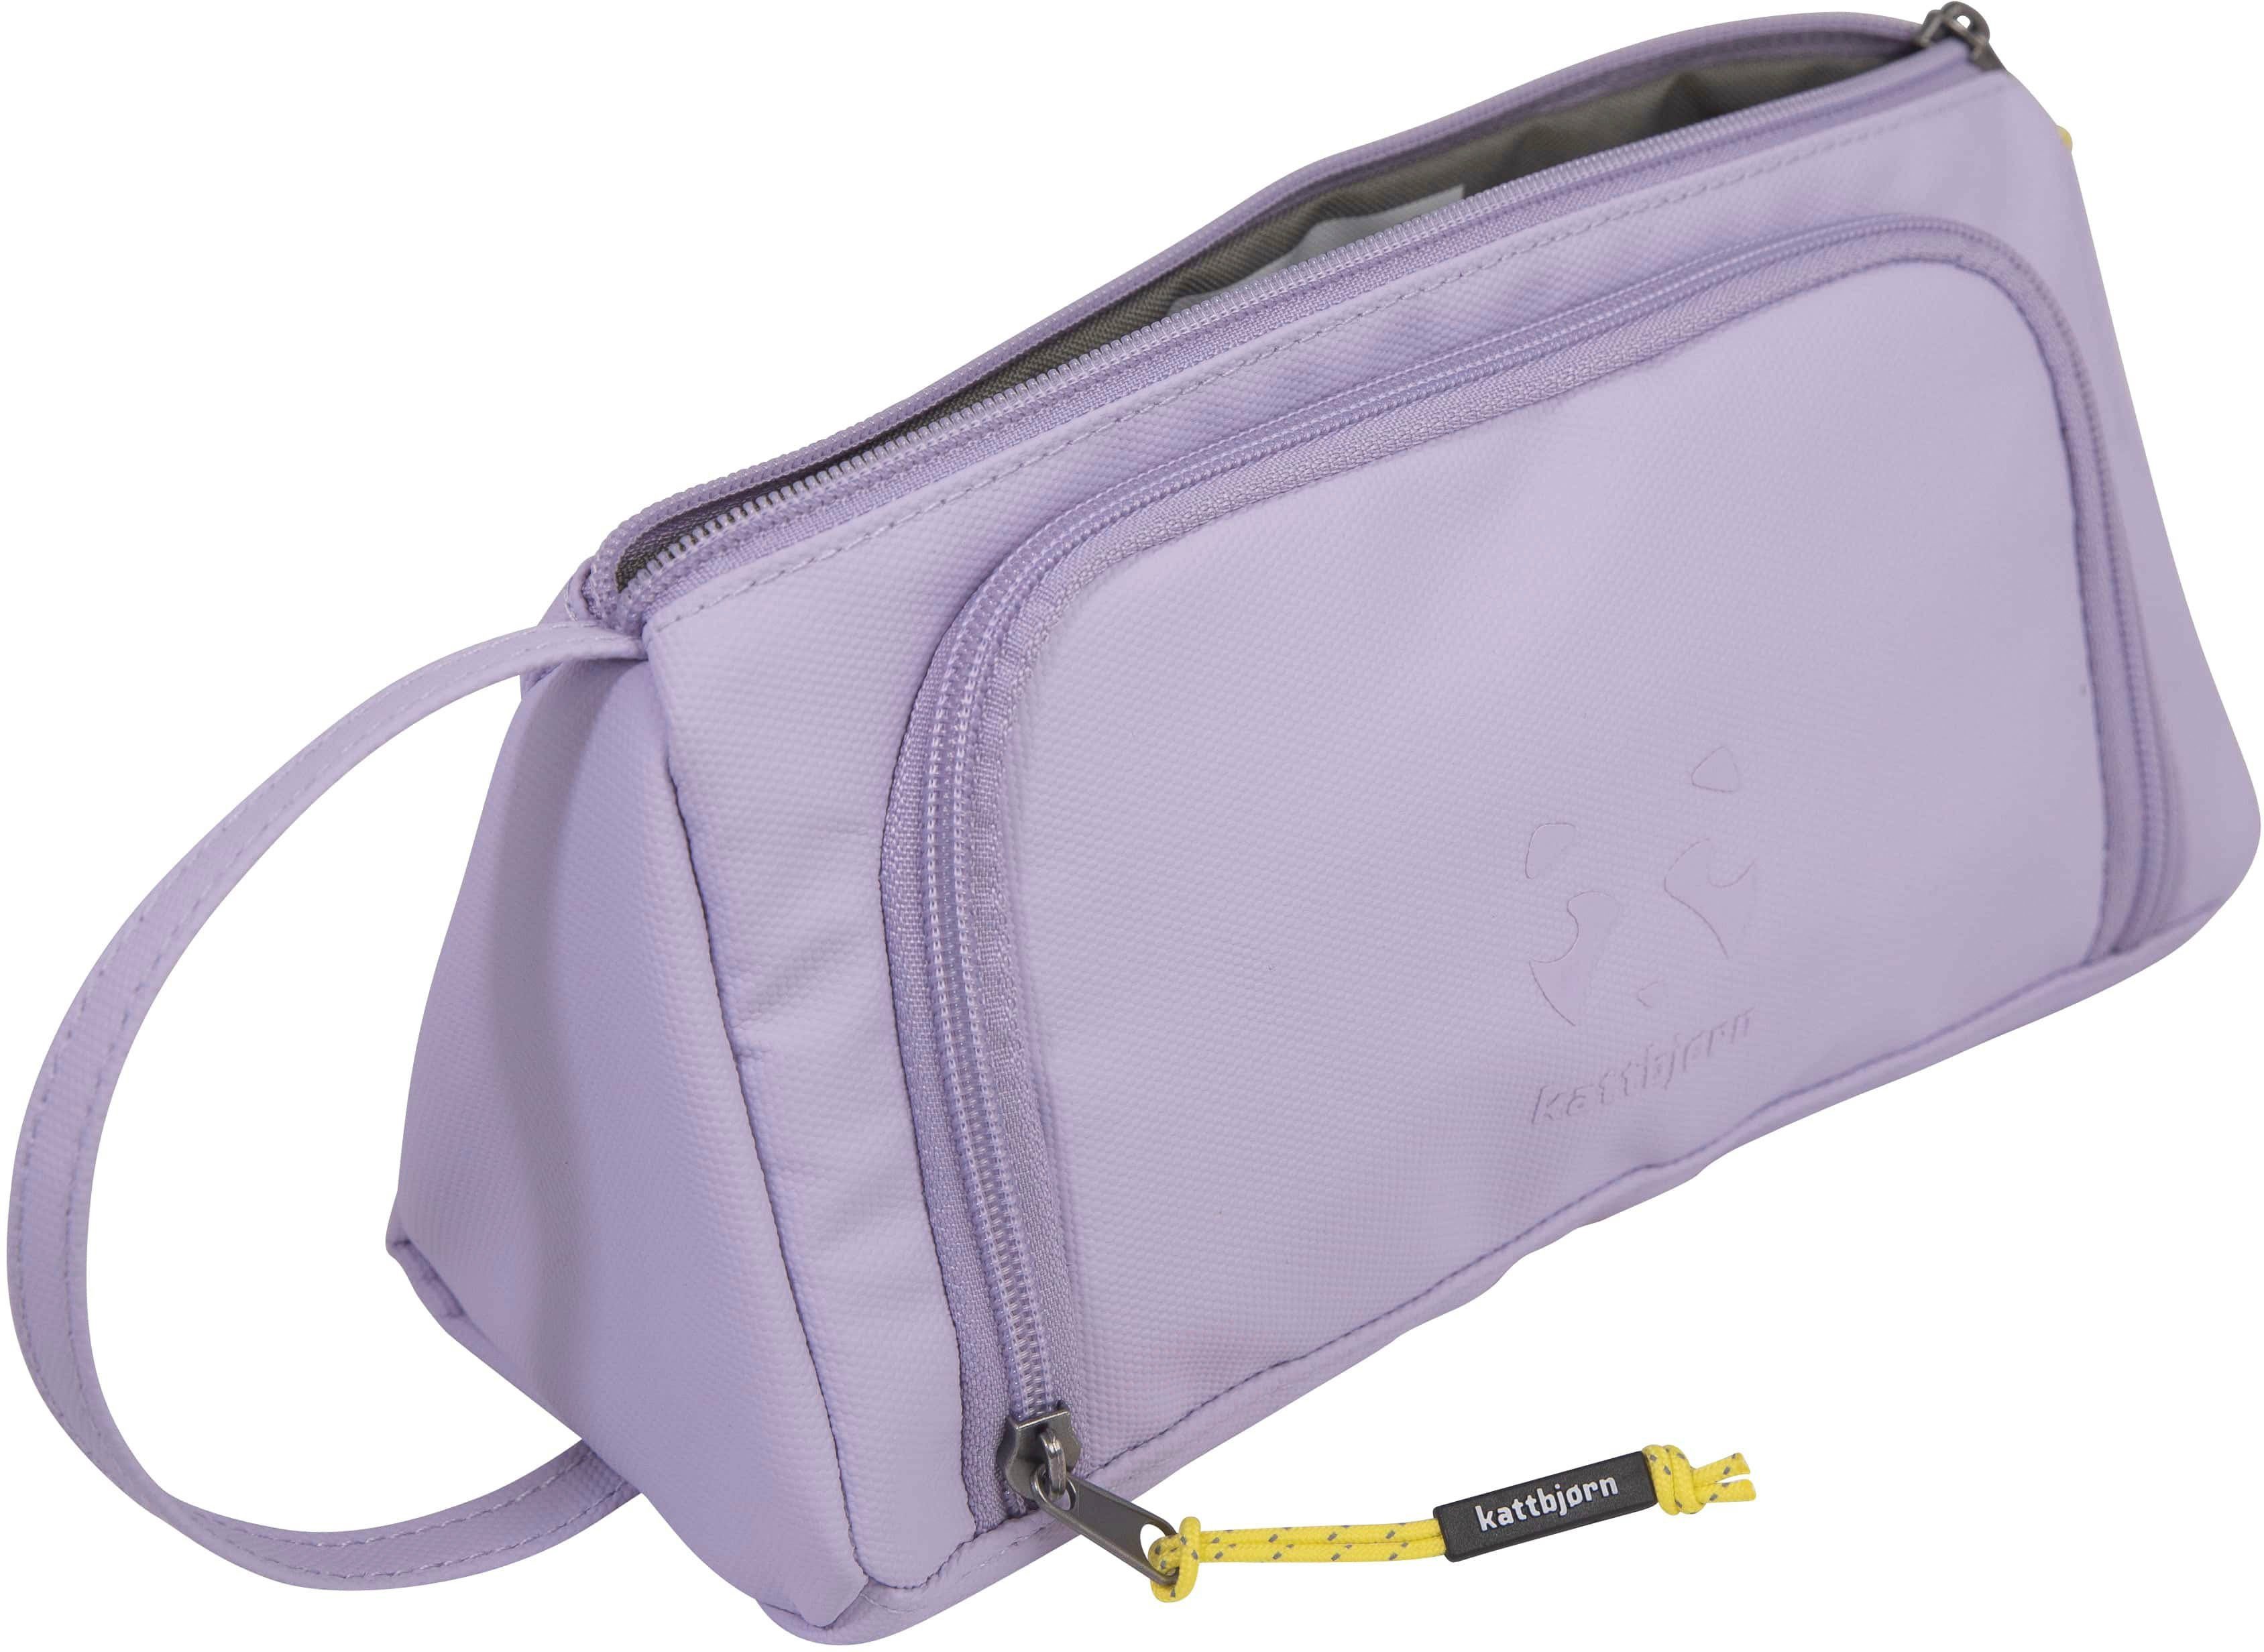 Innen- Federtasche und Power, recyceltem Bag, aus Außenstoffe Swag alle KATTBJØRN PET Purple